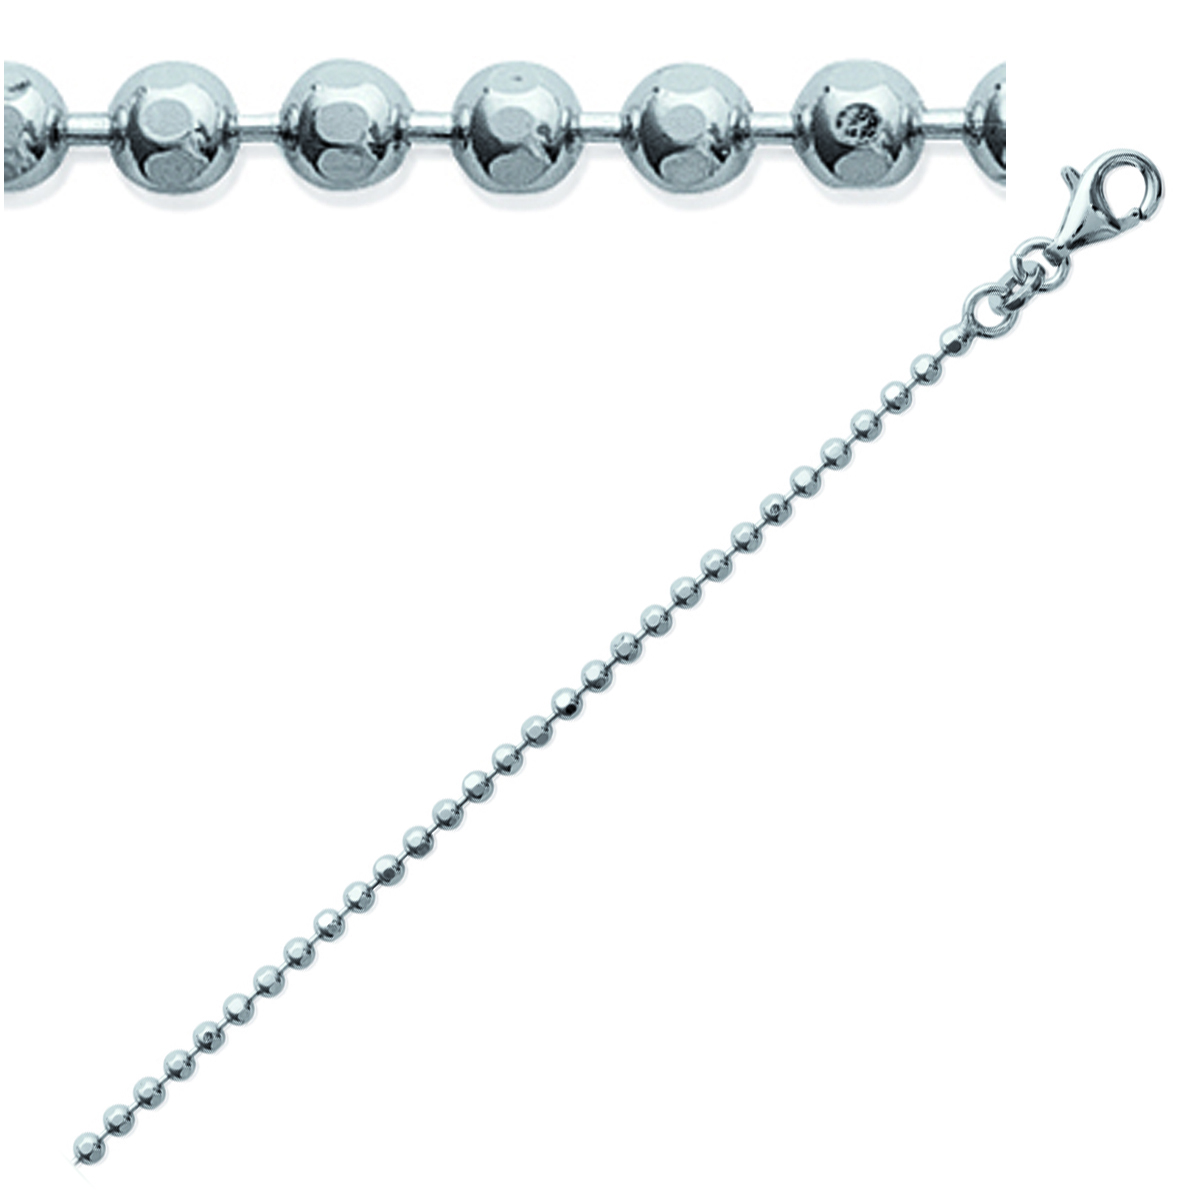 Chaine Argent \'Micro-Billes\' argenté (rhodié) - 55 cm 2 mm - [K9301]